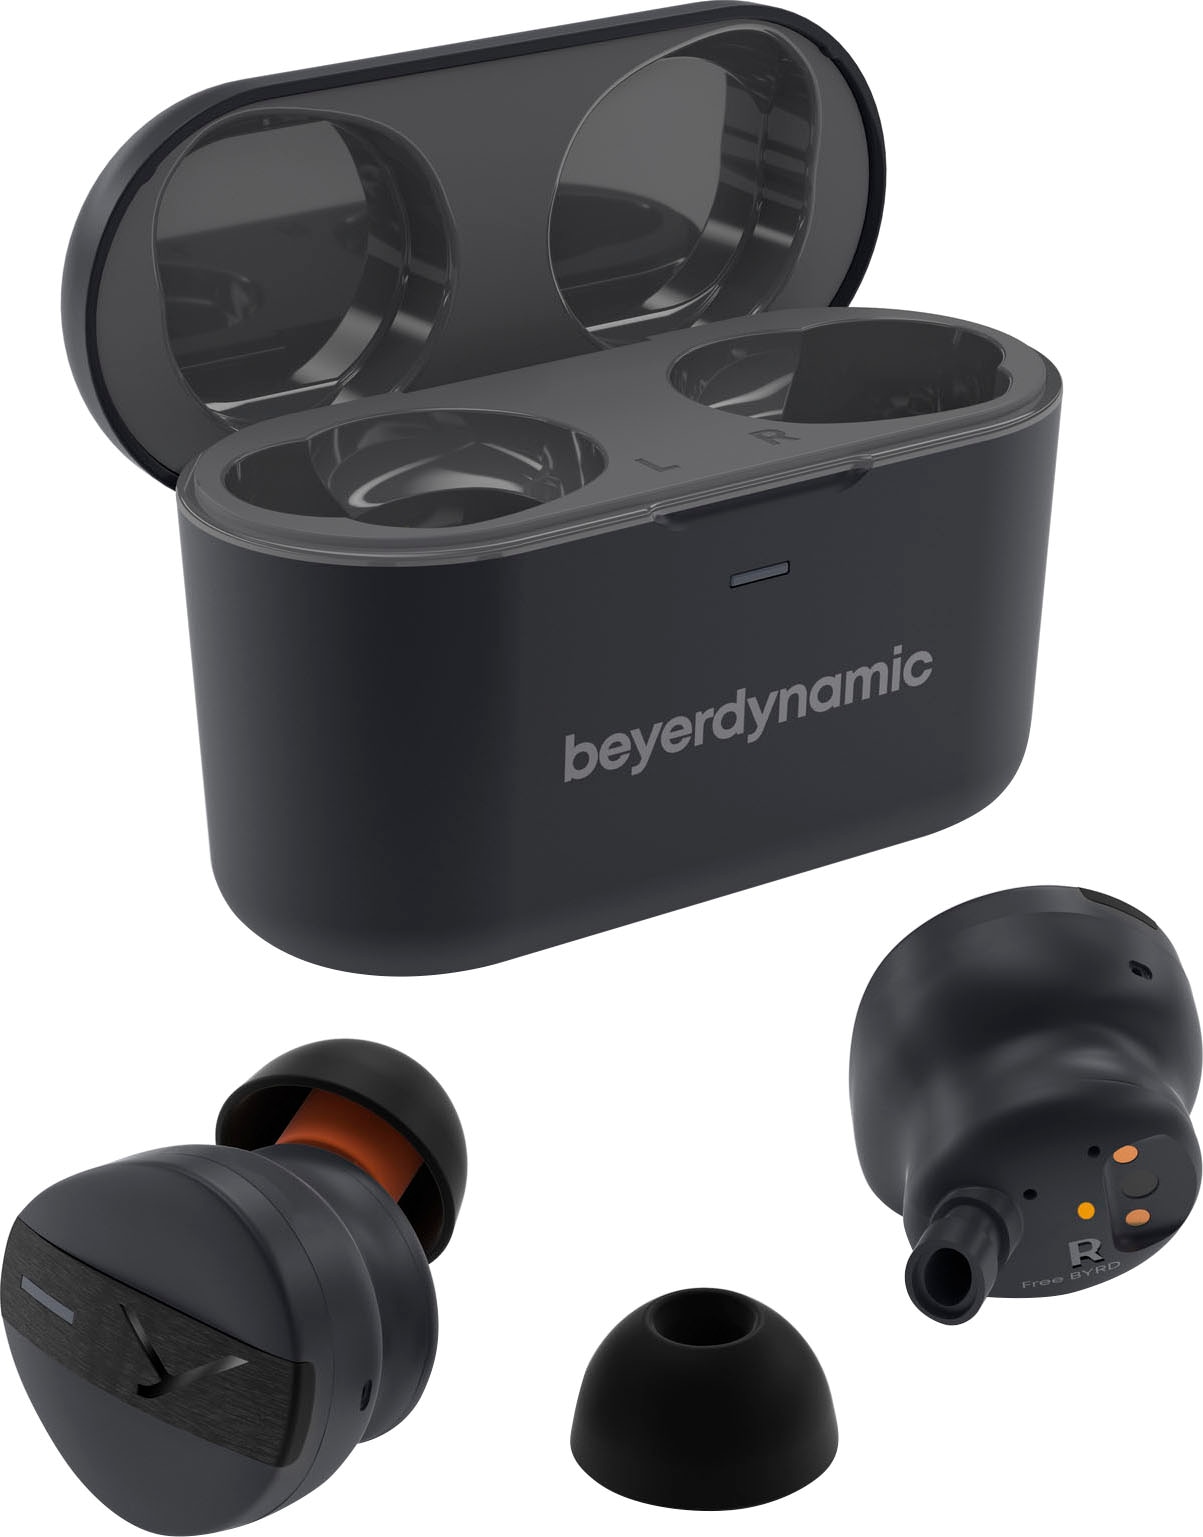 beyerdynamic wireless In-Ear-Kopfhörer »Free BYRD«, Sprachsteuerung ➥ 3  Jahre XXL Garantie | UNIVERSAL